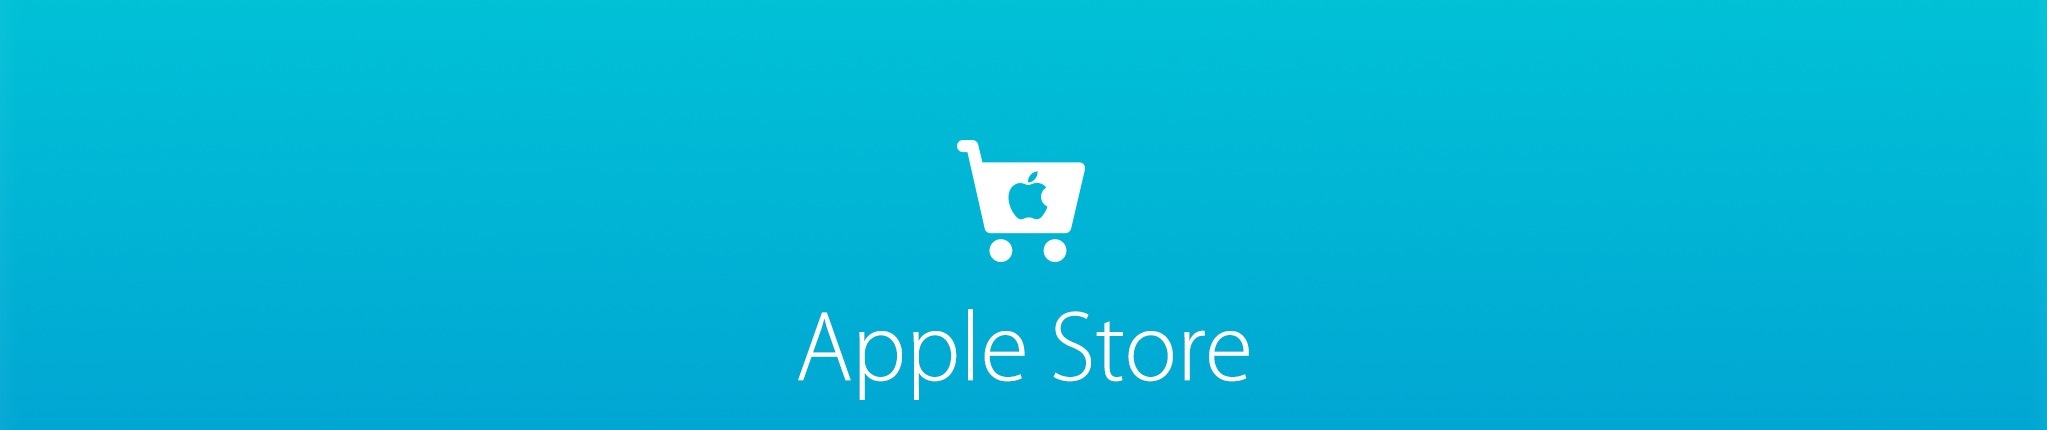 Apple планирует запустить iBeacon в 254 американских магазинах